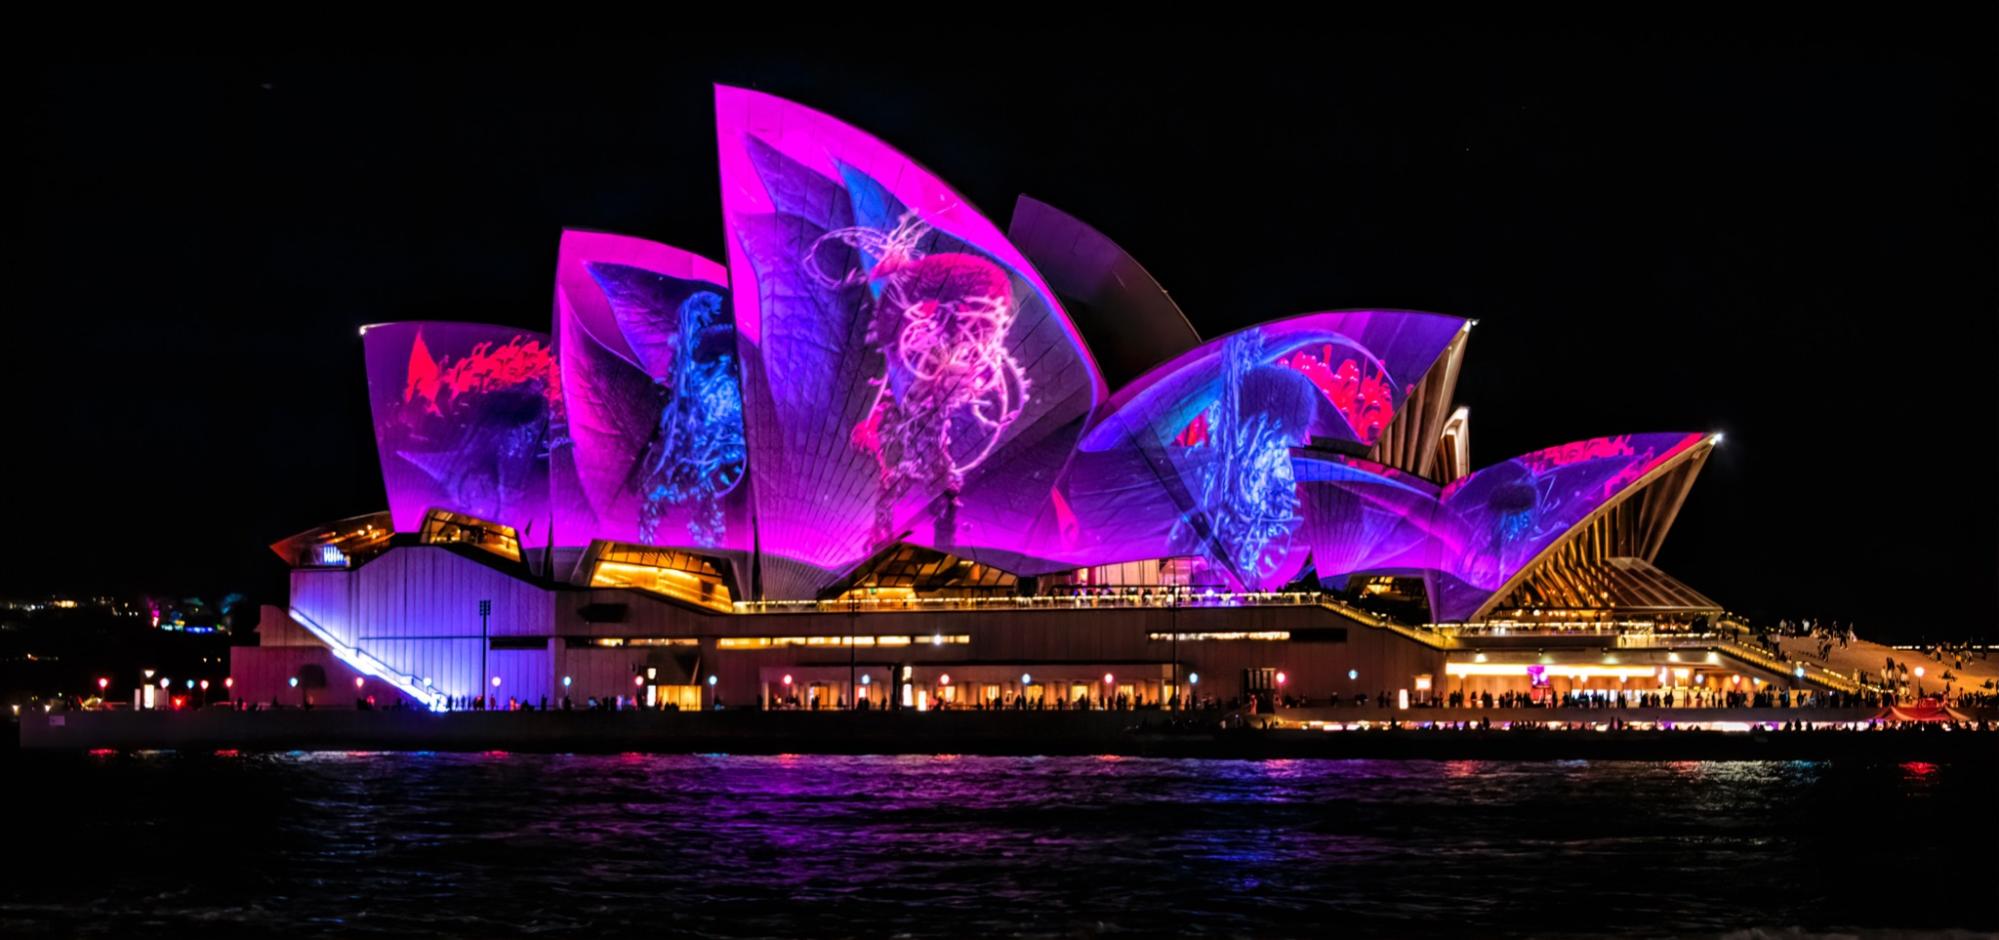 Vivid Sydney Festival of light